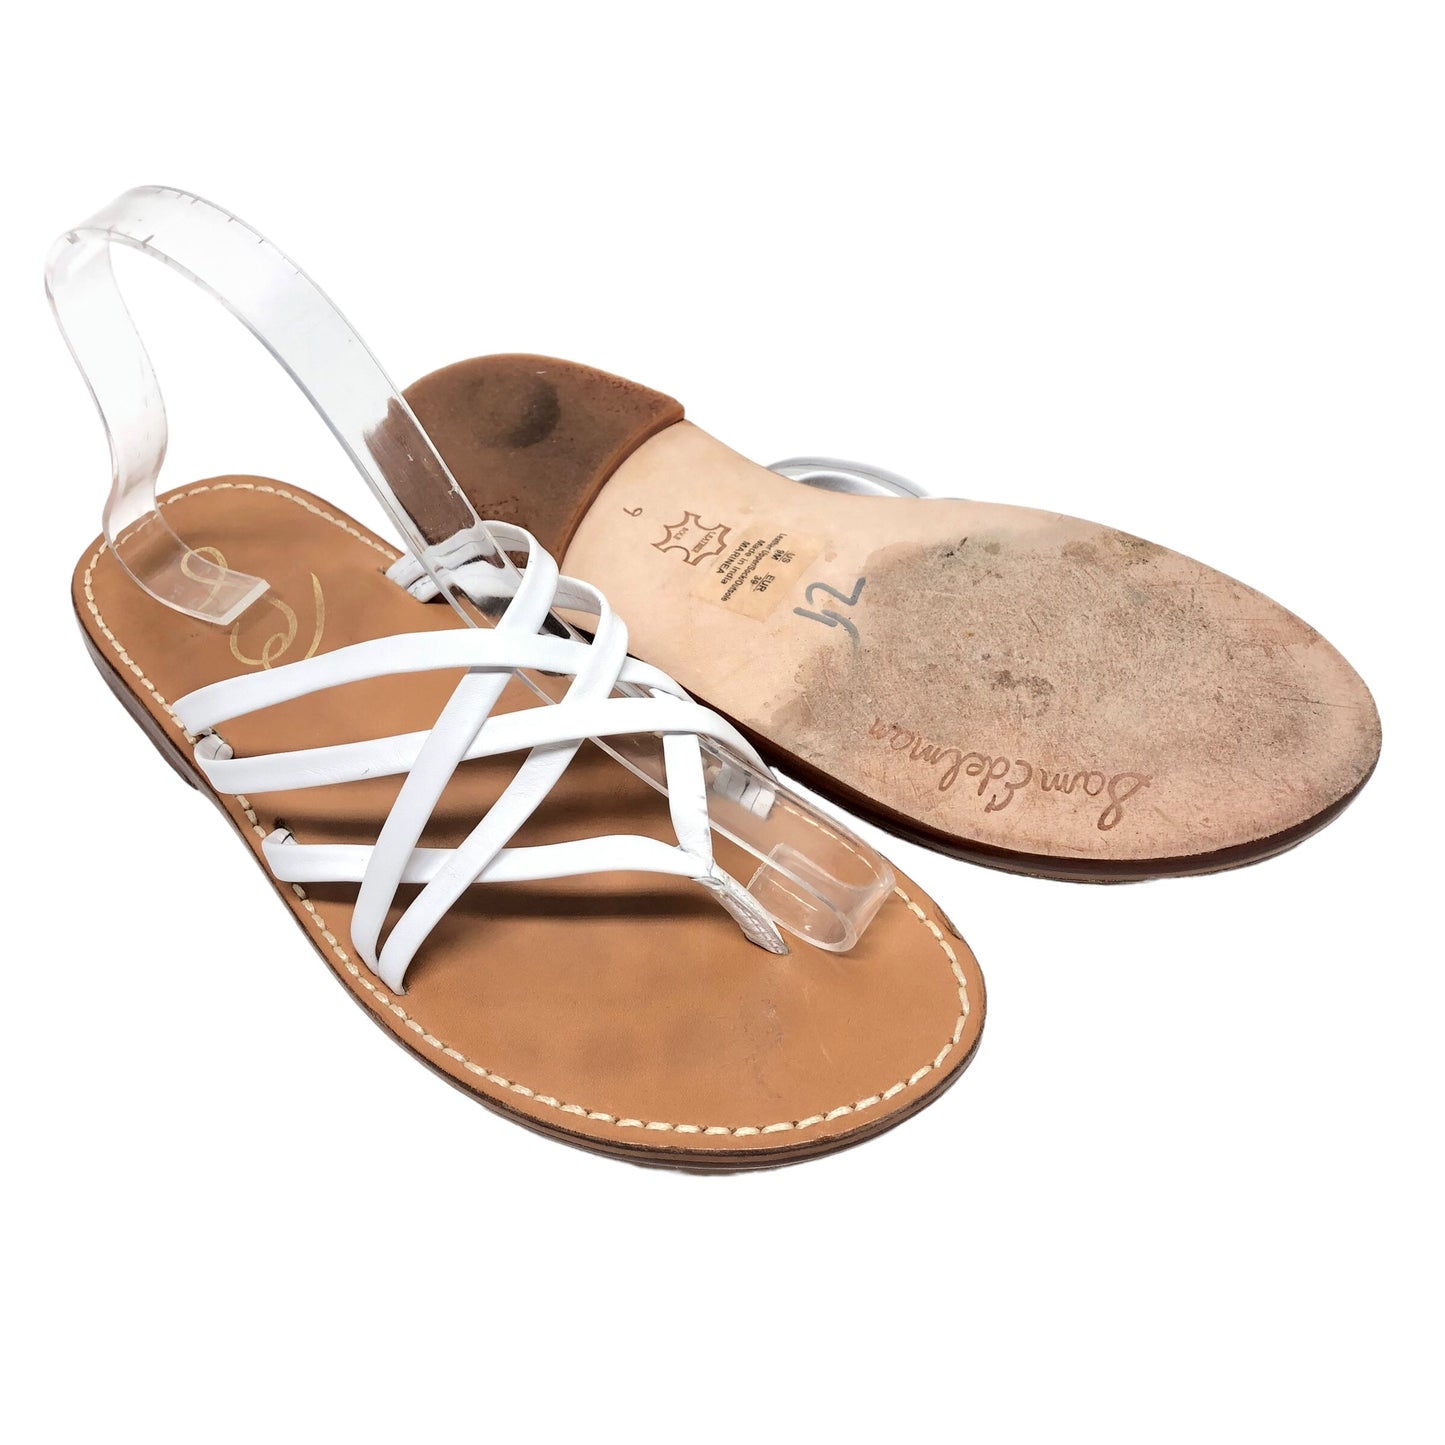 White Sandals Flats Sam Edelman, Size 9